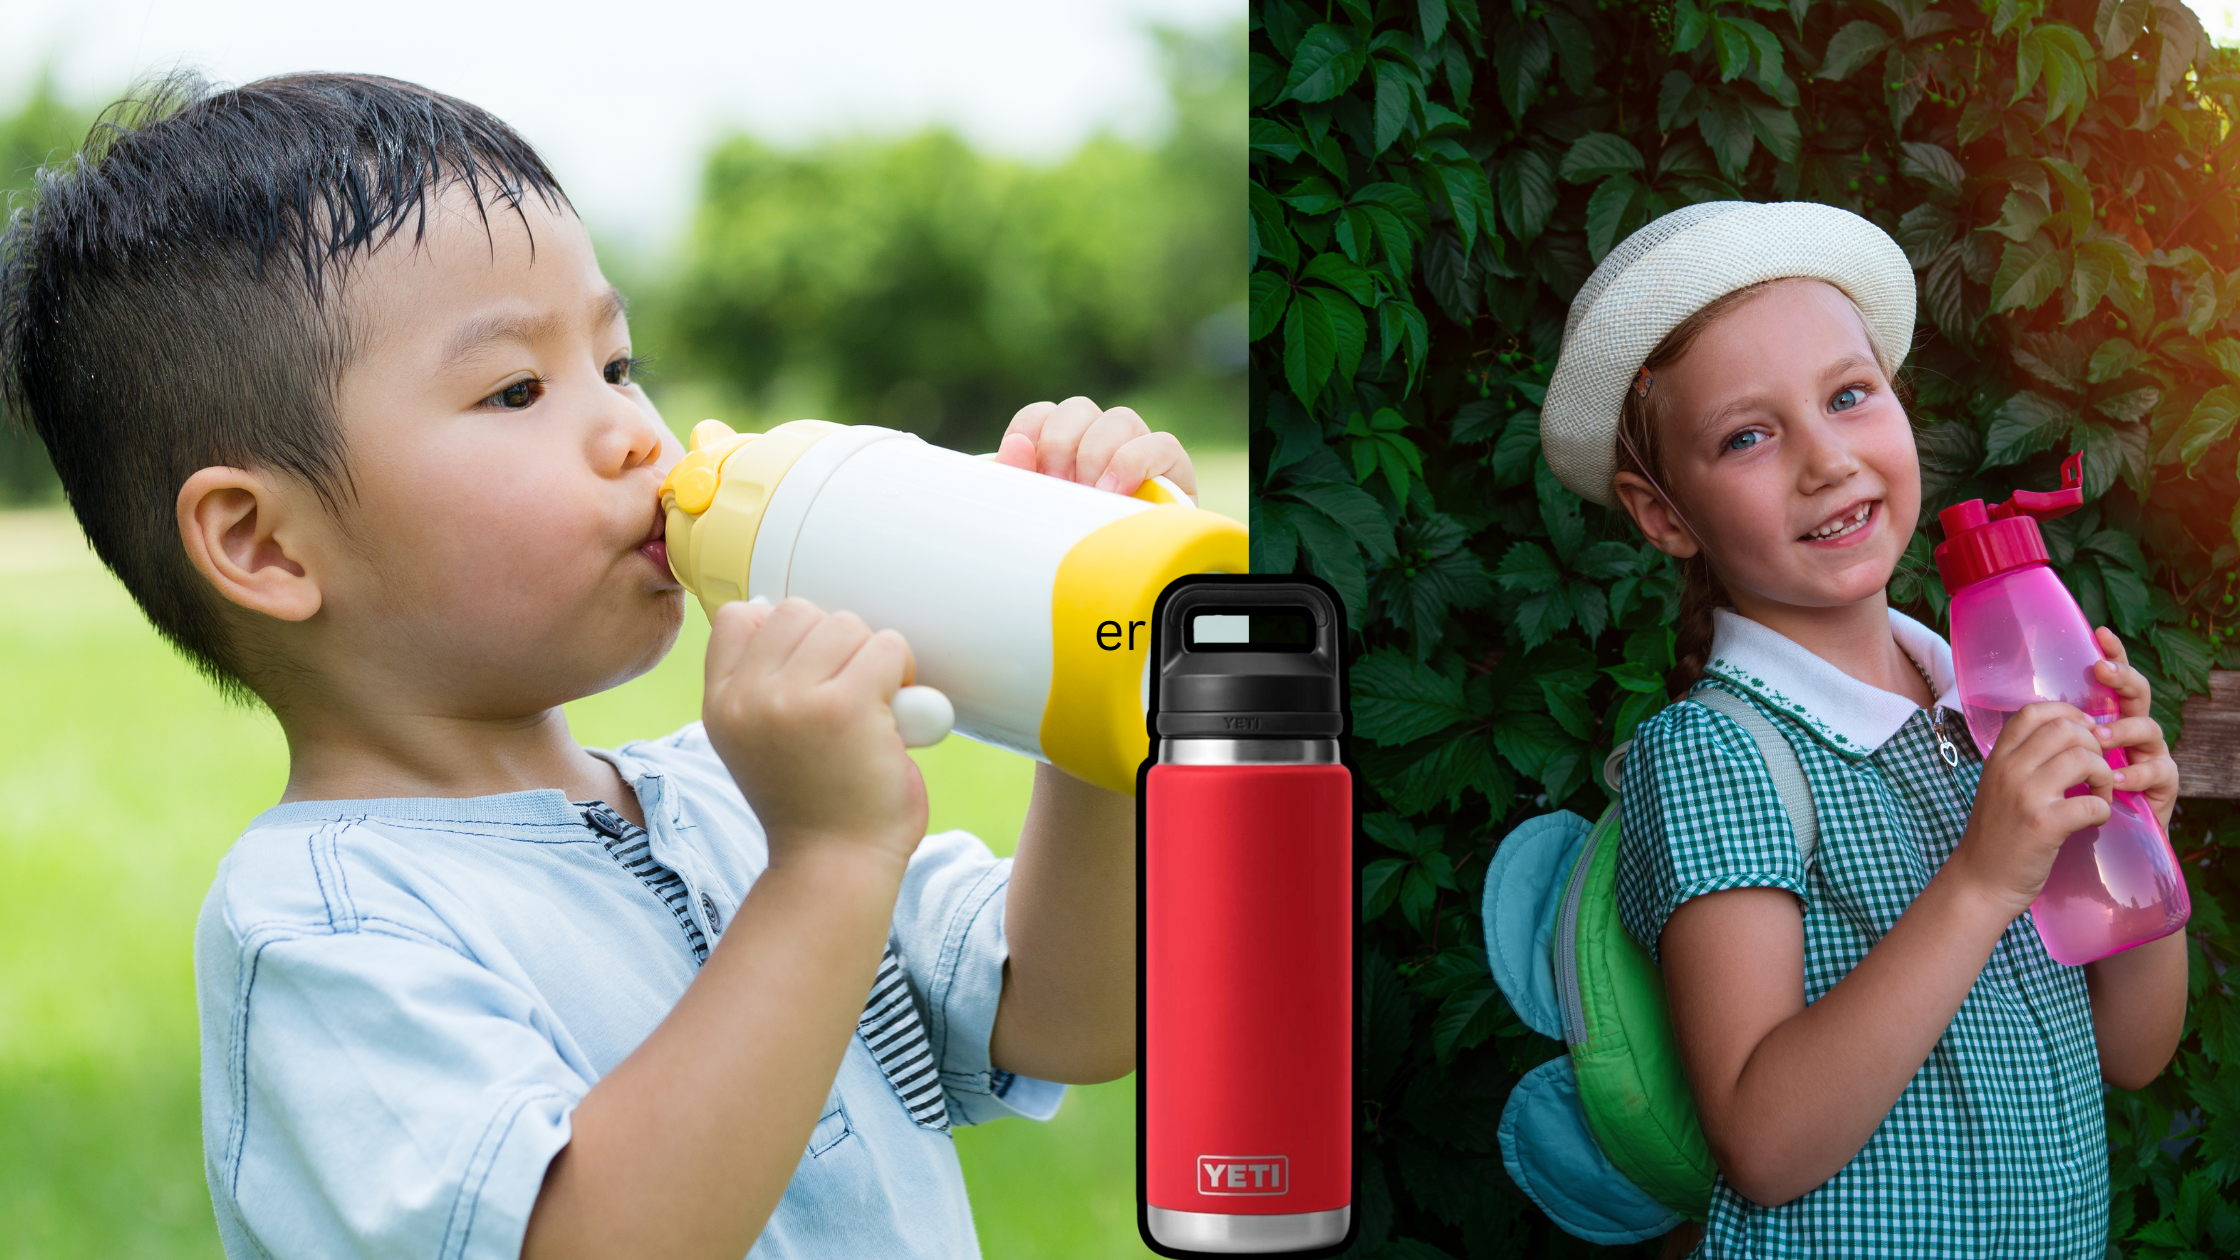 Cirkul water bottle for kids